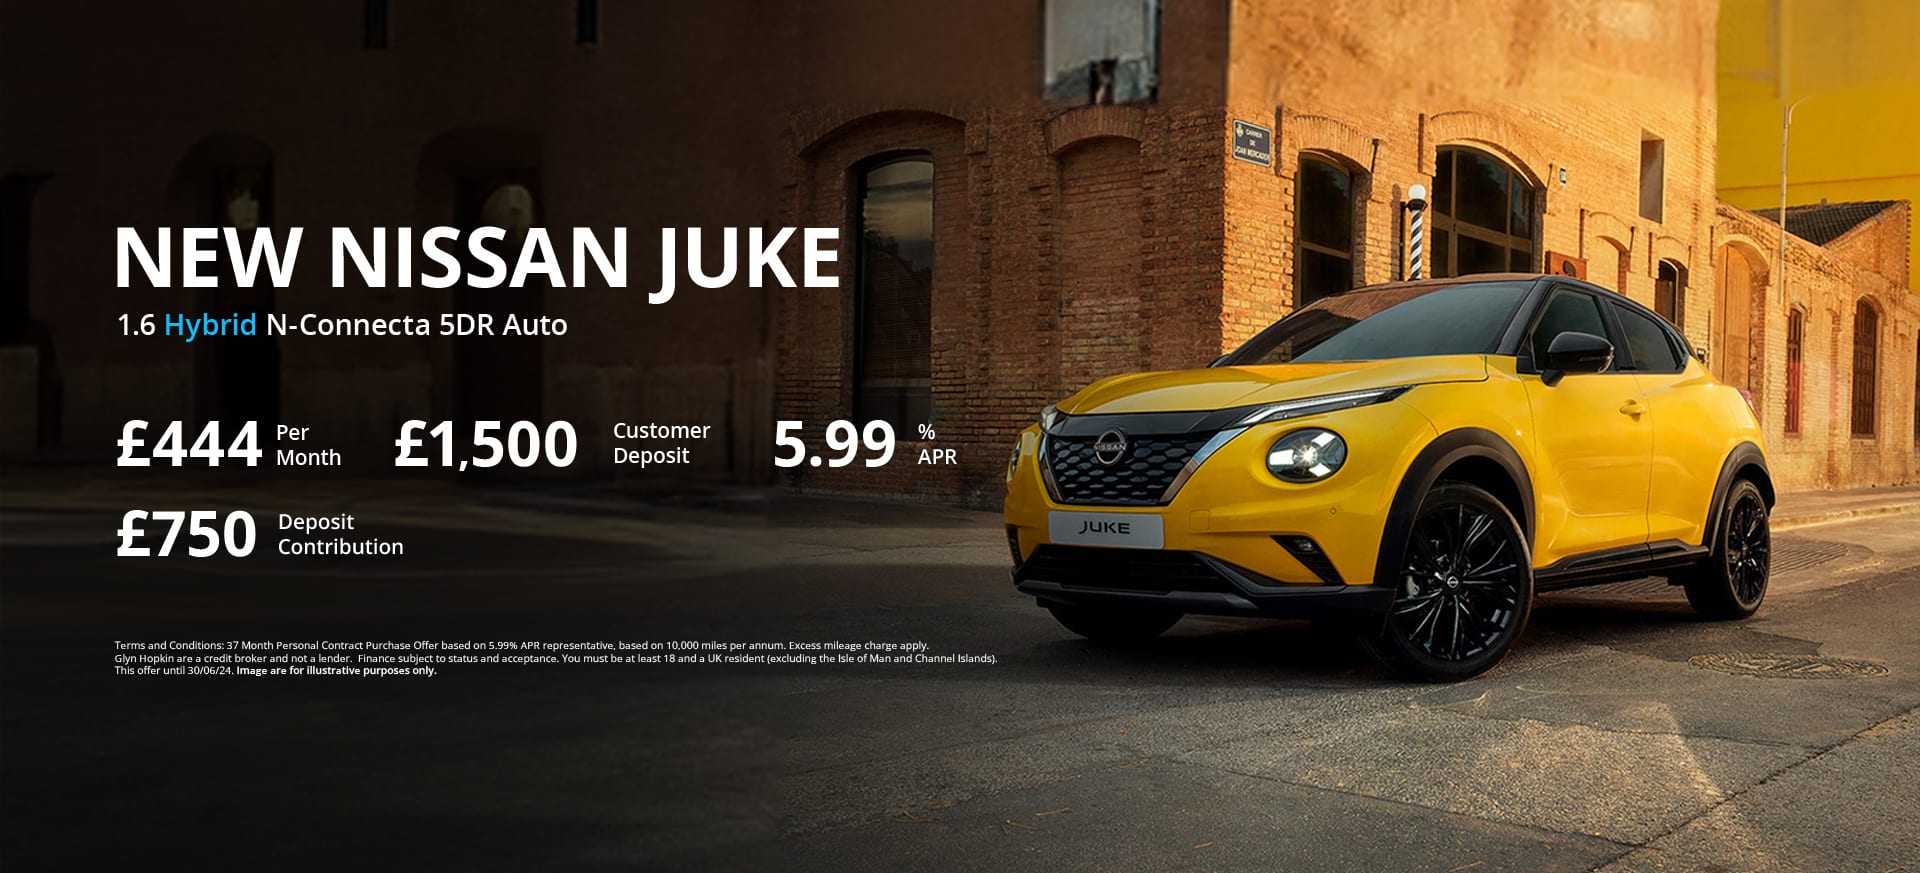 Nissan Juke Hybrid